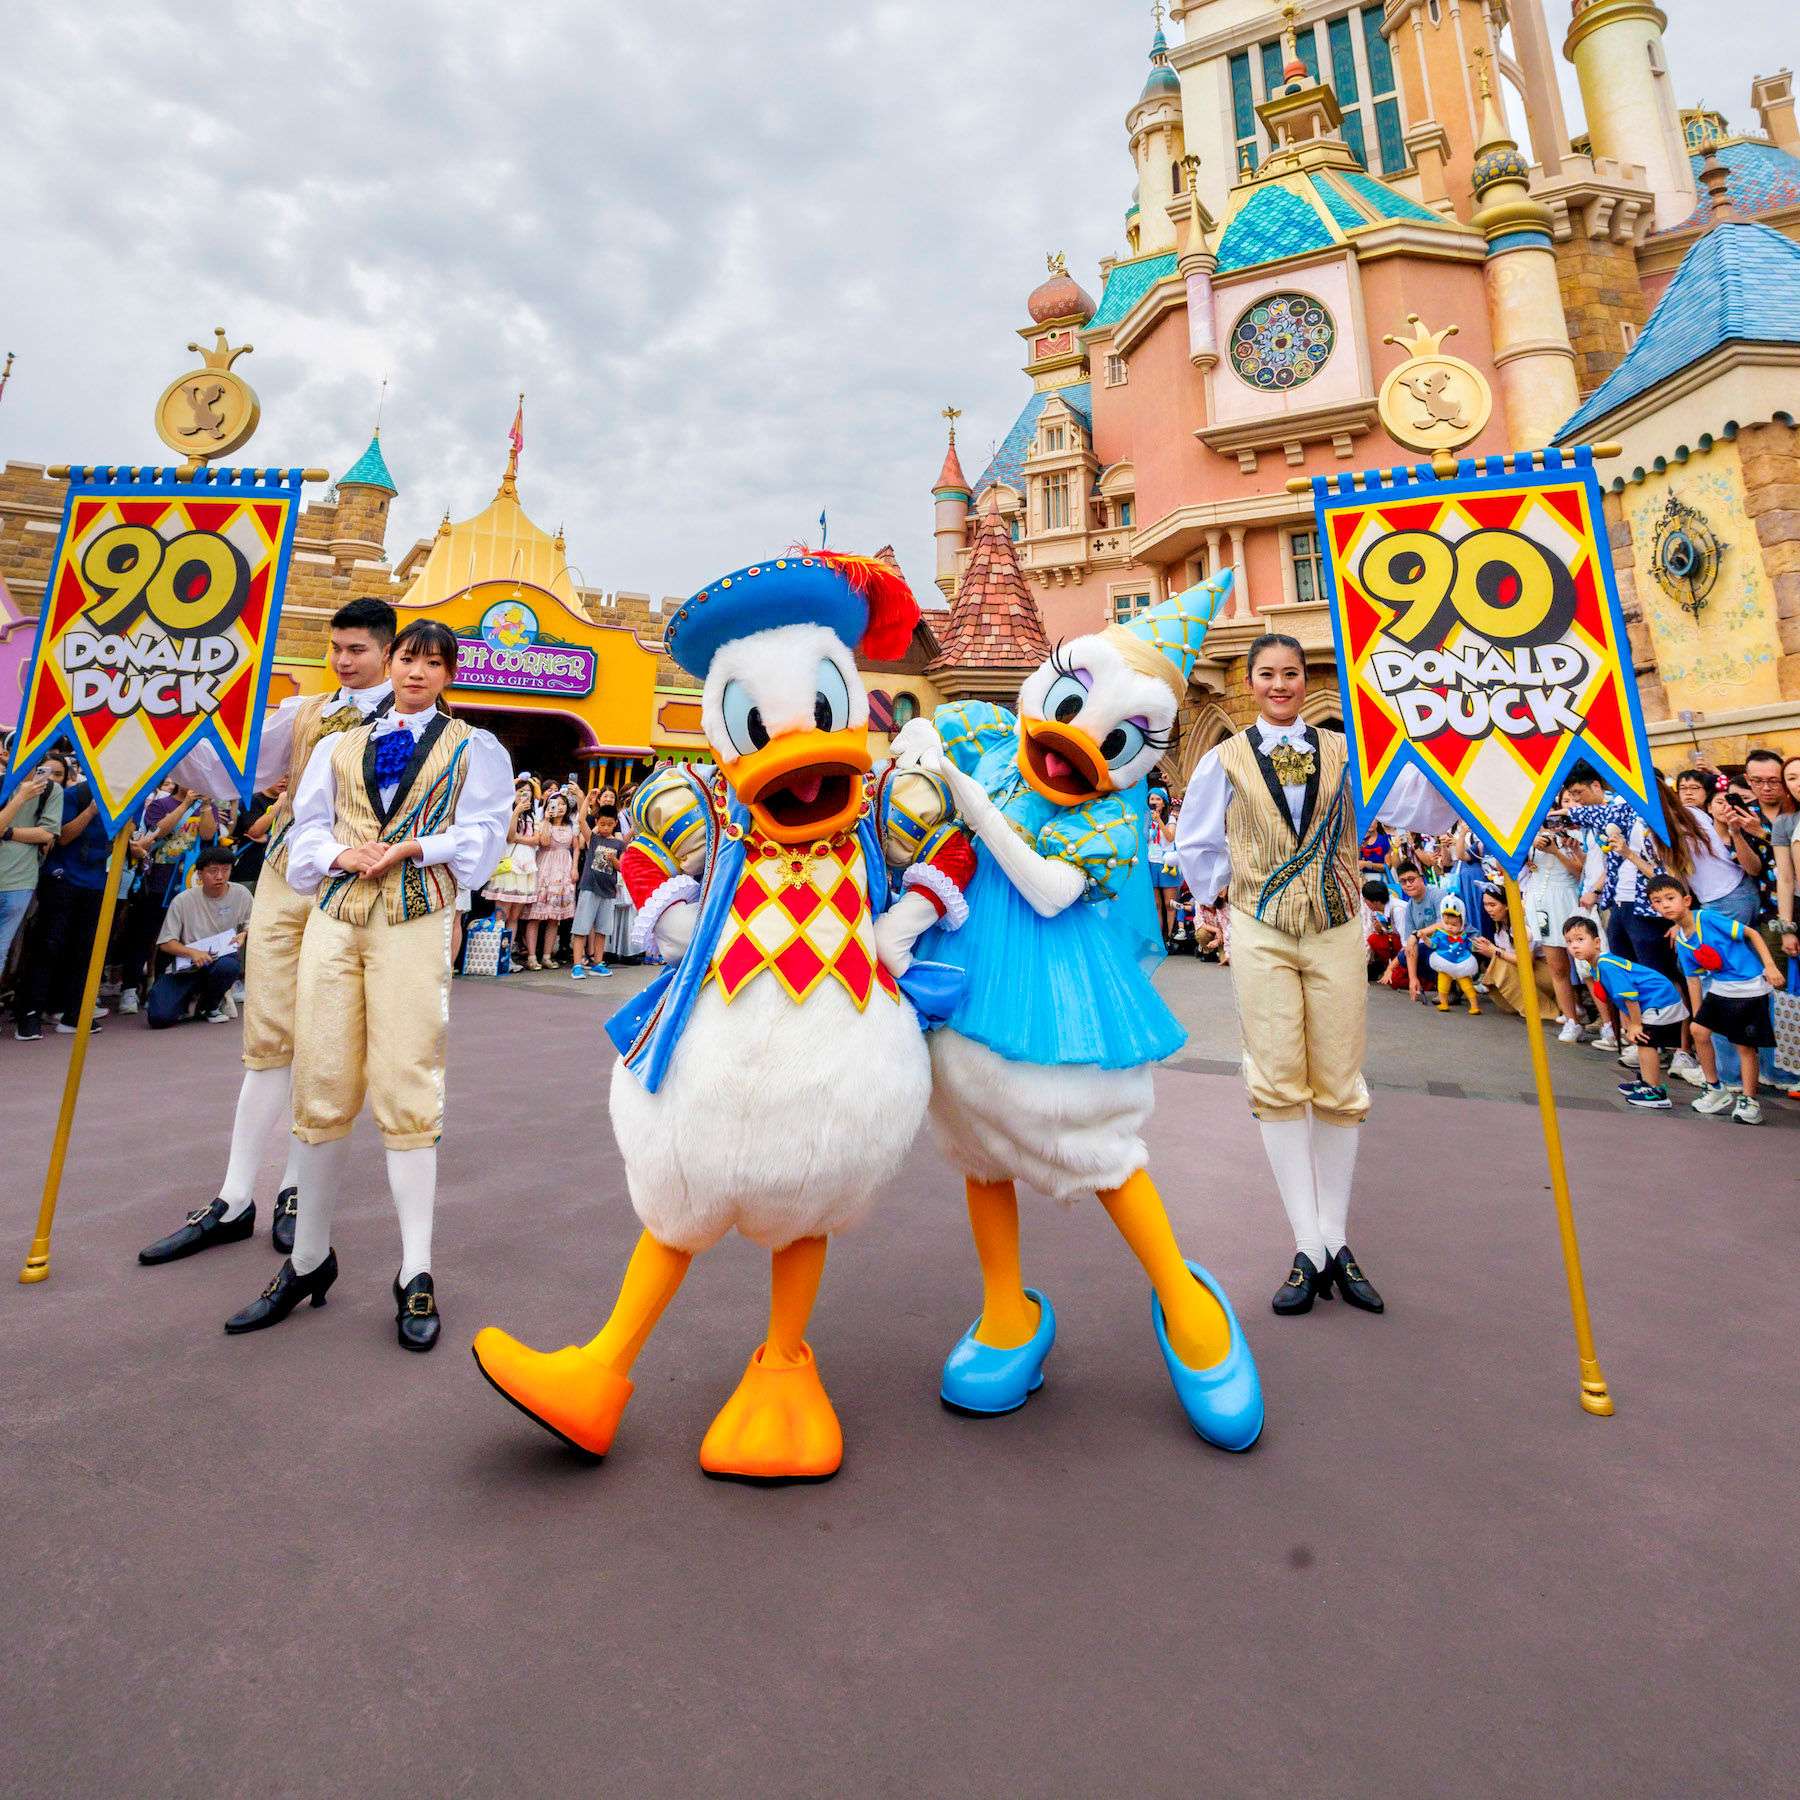 Celebrate Donald Duck’s 90th Birthday at Hong Kong Disneyland